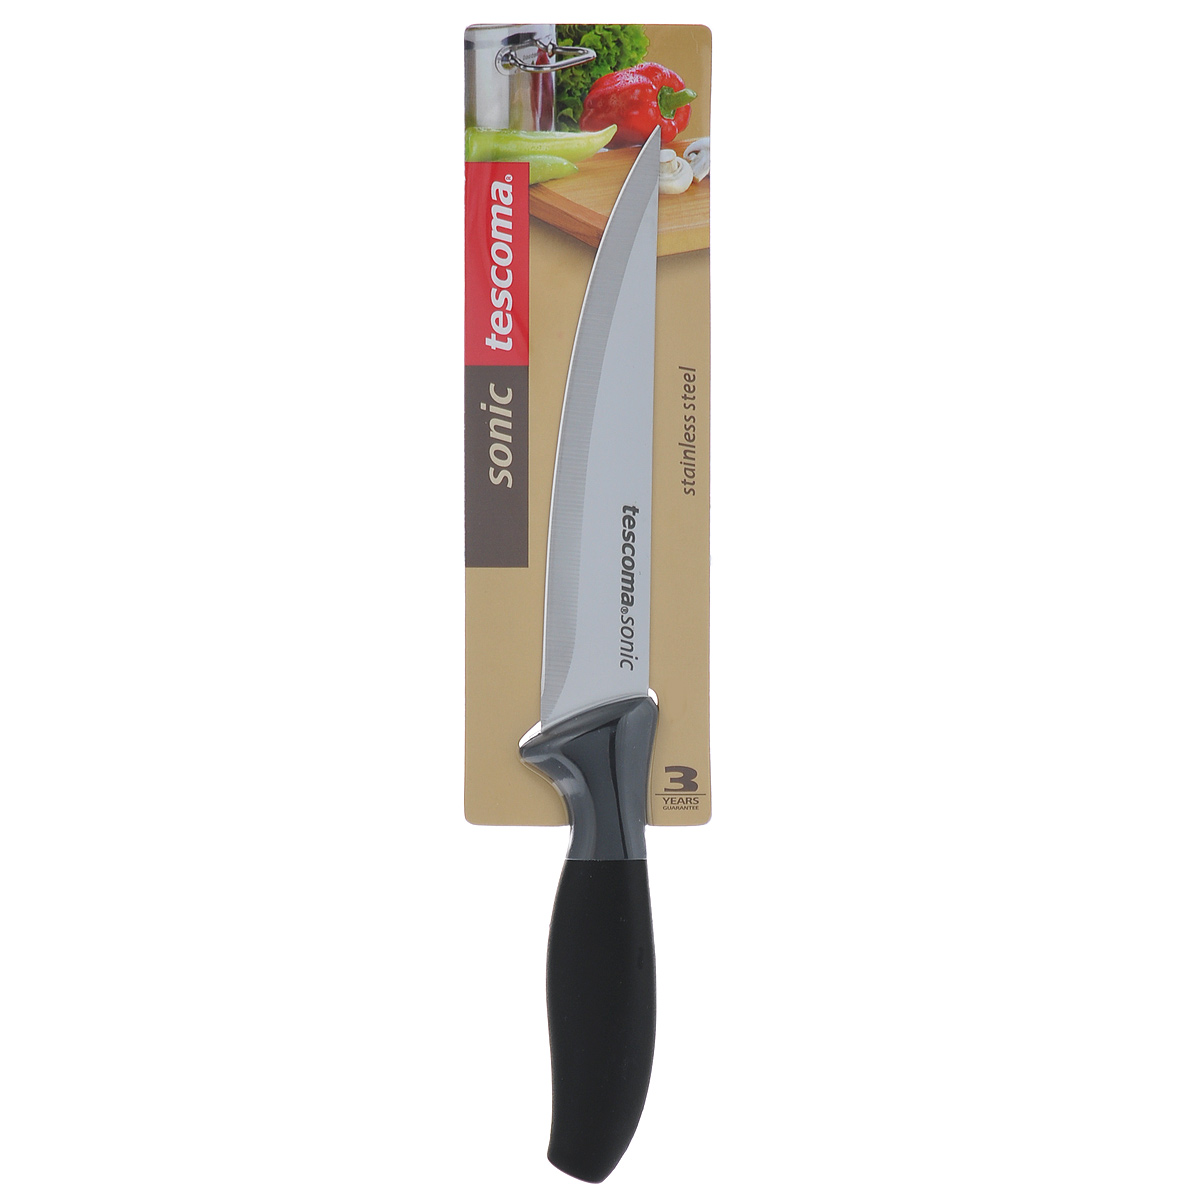 Нож универсальный Tescoma "Sonic" - это легкий и многофункциональный нож для  резки небольших овощей и фруктов,  колбасы, сыра, масла. Имеет неширокое лезвие.  Один из самых нужных на кухне ножей. Лезвие выполнено из нержавеющей стали, эргономичная  ручка - из прочной пластмассы.  Универсальный нож станет прекрасным  дополнением  к коллекции ваших кухонных аксессуаров и не займет много места при хранении.  Можно мыть в посудомоечной машине.   Общая длина ножа: 23,5 см. Длина лезвия: 12 см.